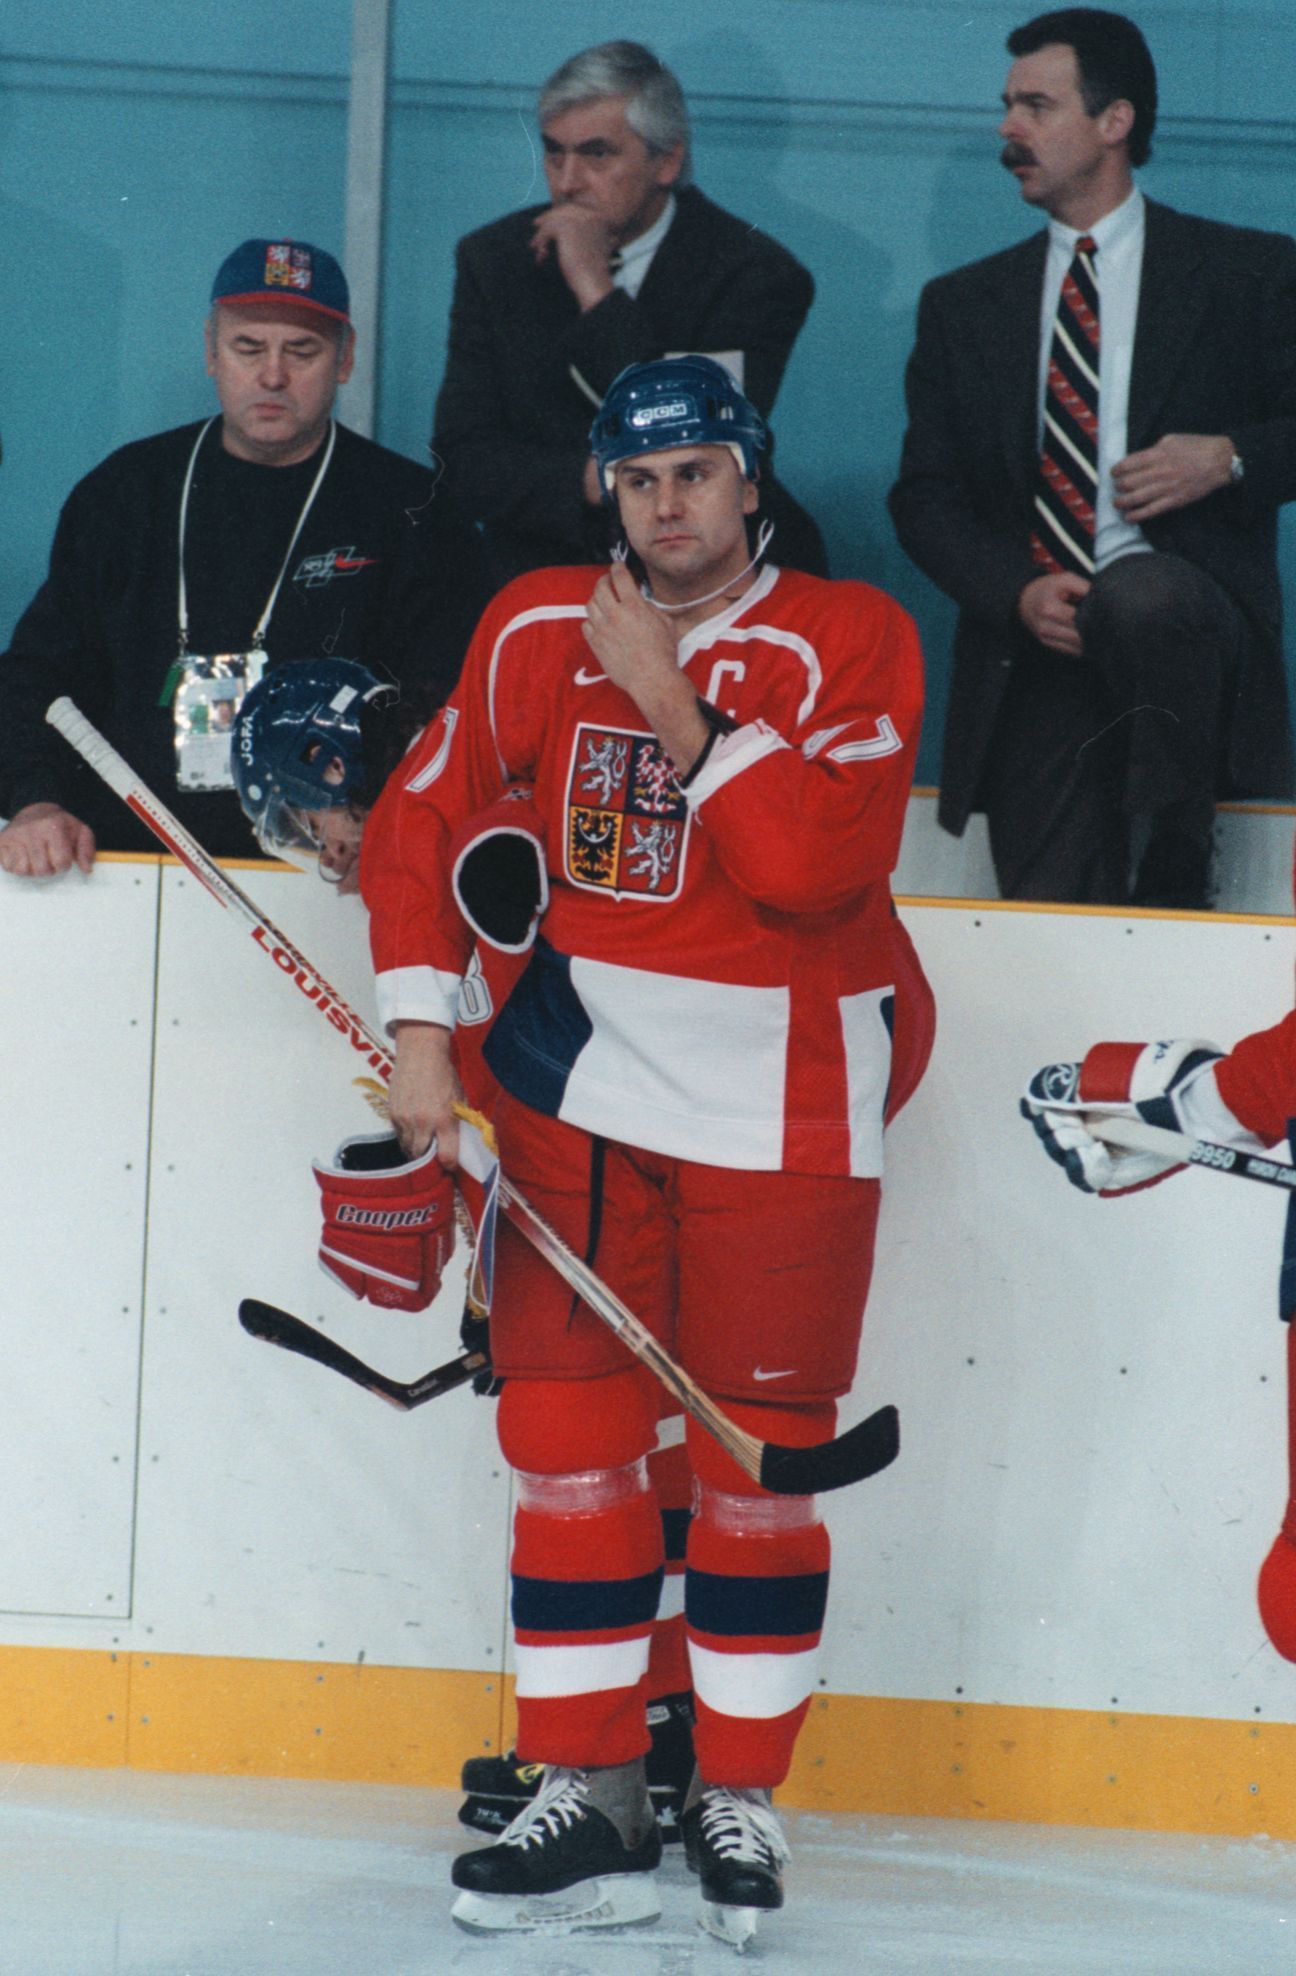 Archivní fotografie z Nagana 1998, olympijské hry, zlato z hokejového turnaje, Vladimír Růžička